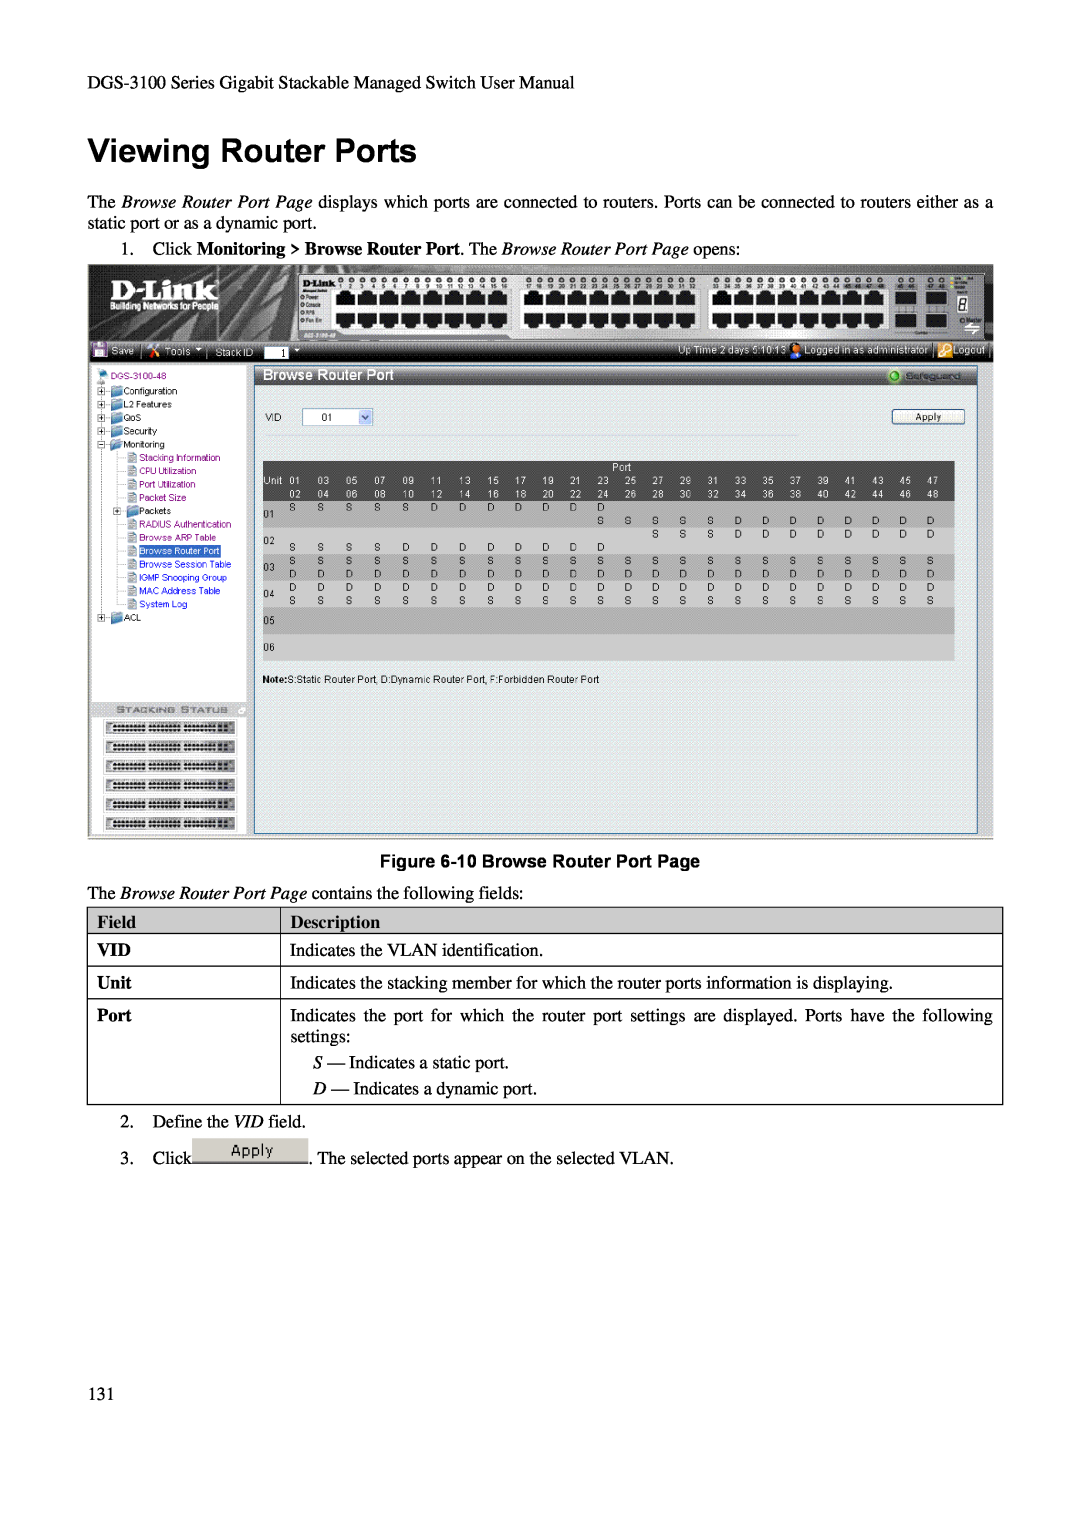 D-Link DGS-3100 user manual Viewing Router Ports, 10 Browse Router Port Page, Field VID Unit Port, Description 